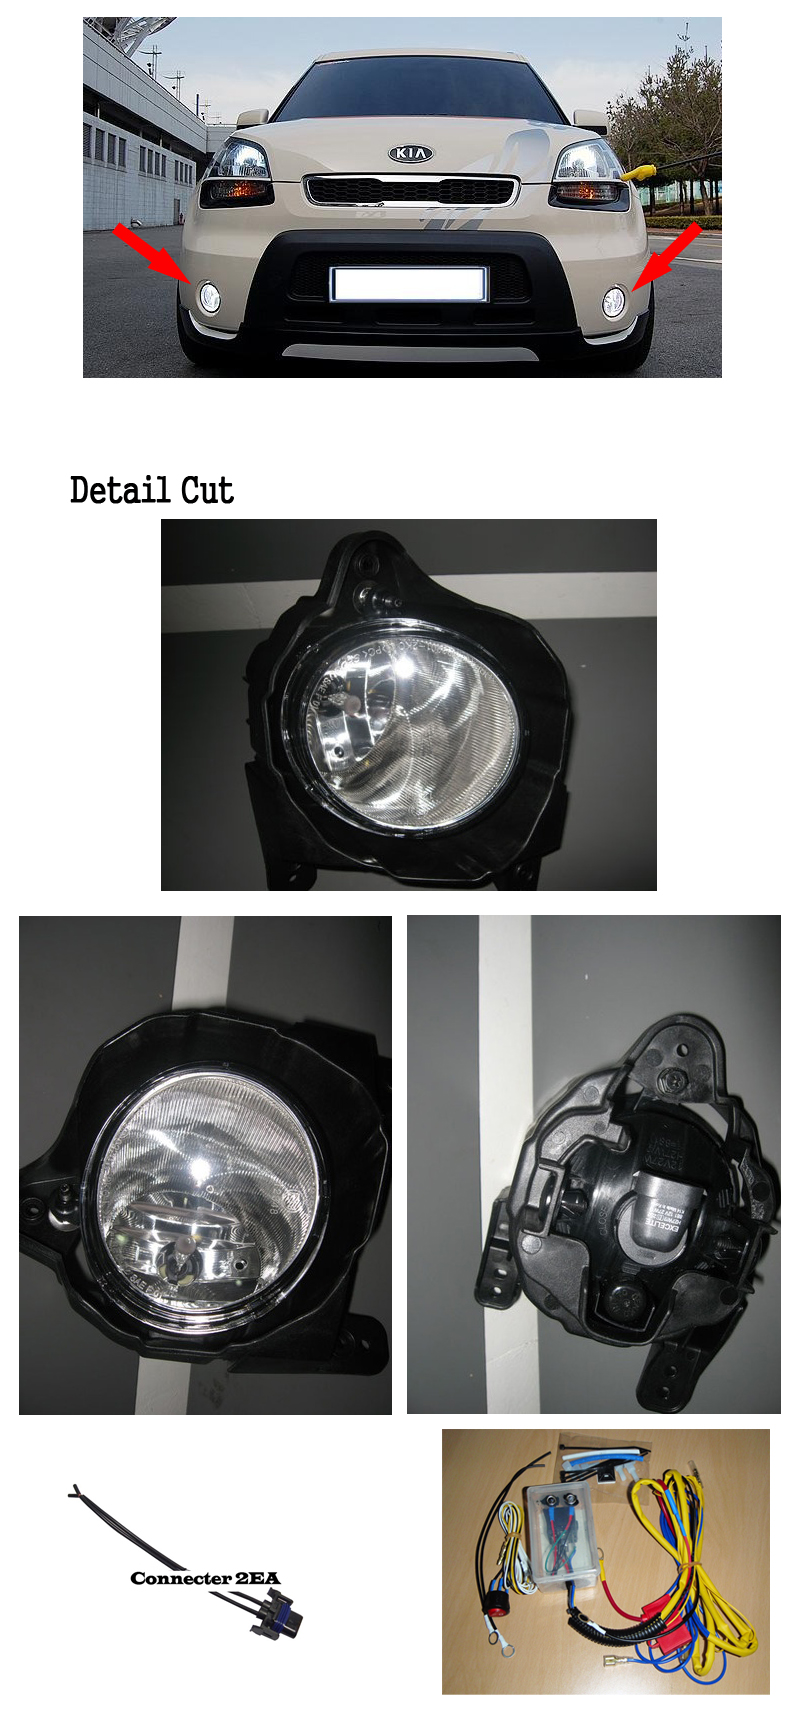 Genuine OEM Fog Lamp Light Complete Kit Full Wiring Harness For 2012 Kia Soul